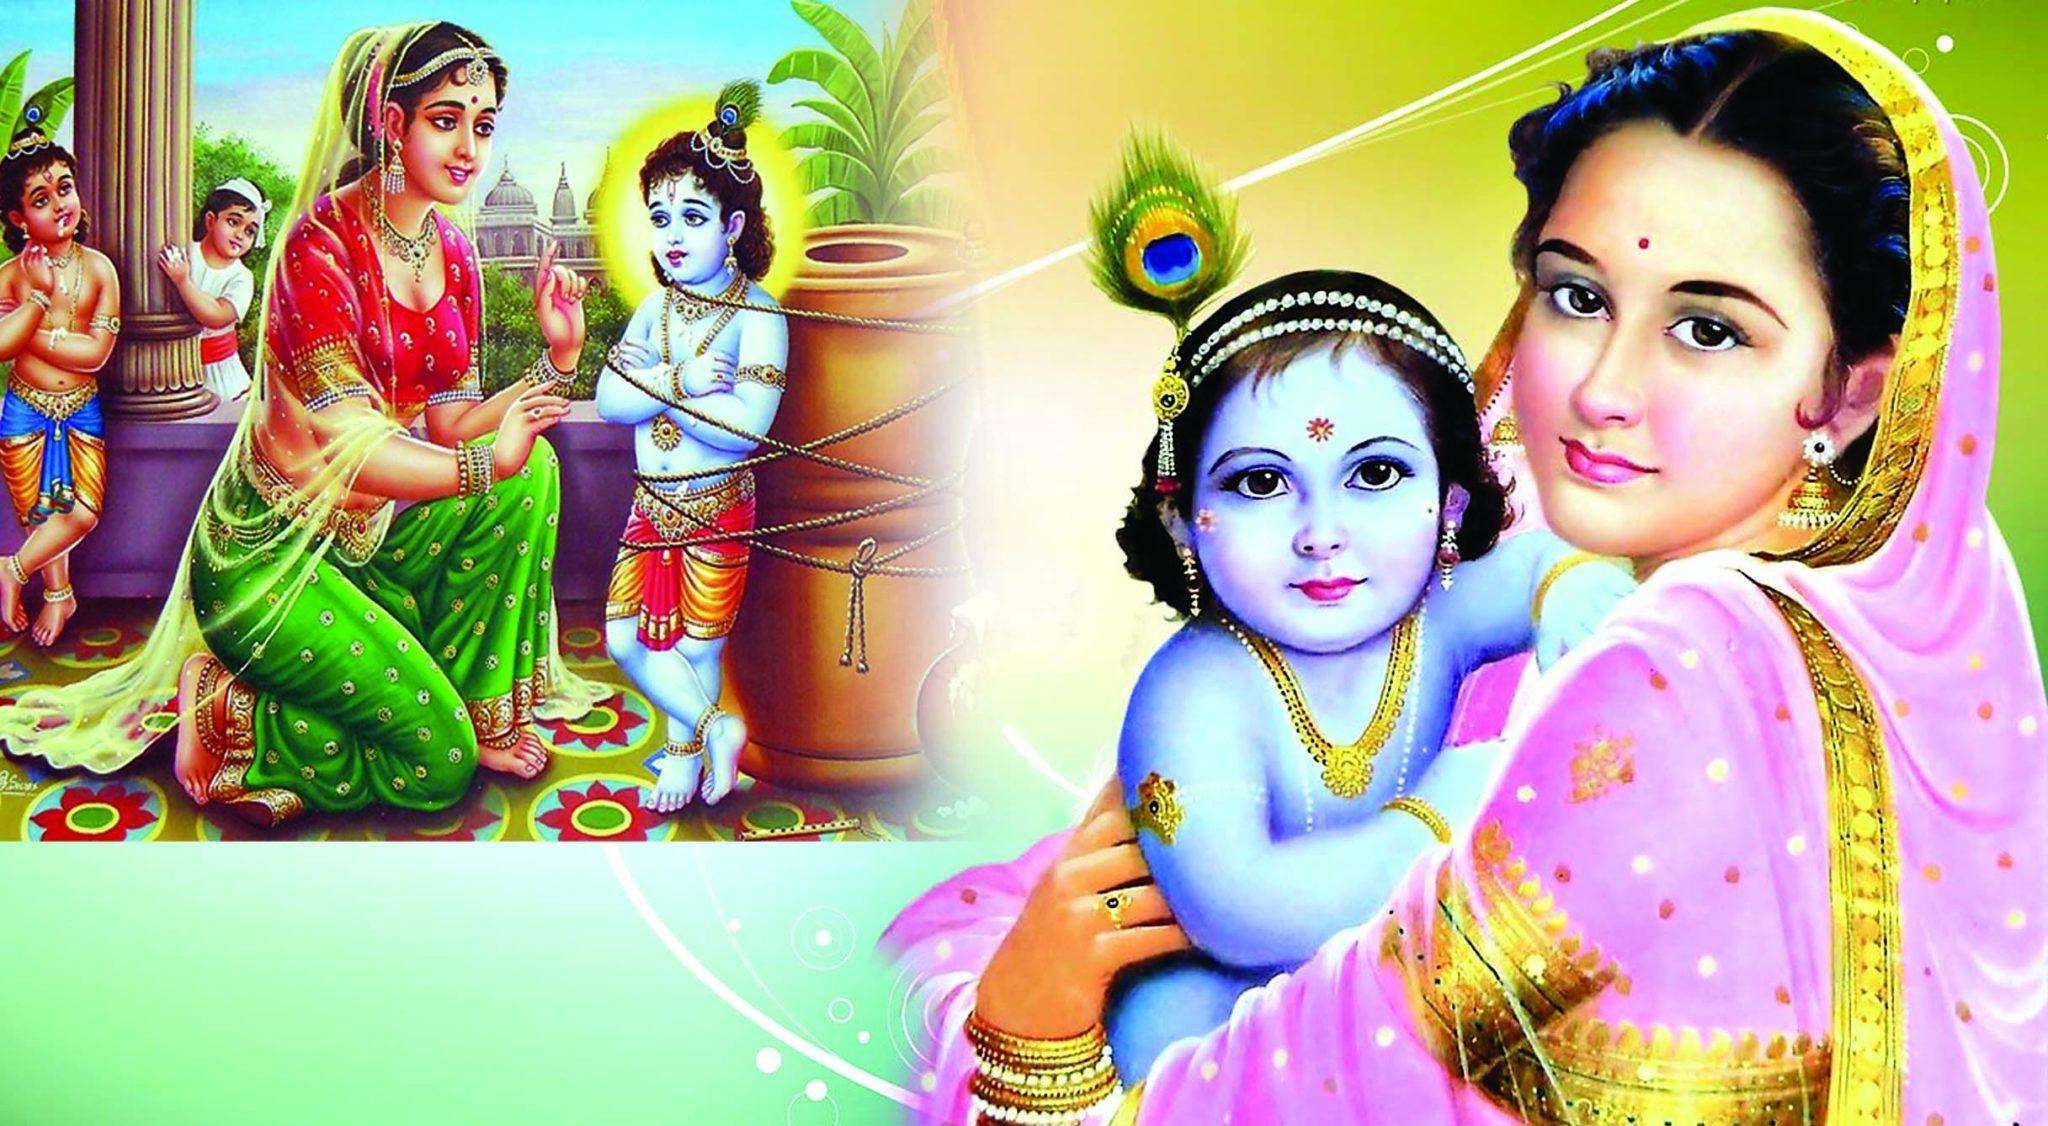 Yashoda jayanti 2021: भगवान विष्णु ने क्या दिया था मां यशोदा को वरदान, जानिए यहां